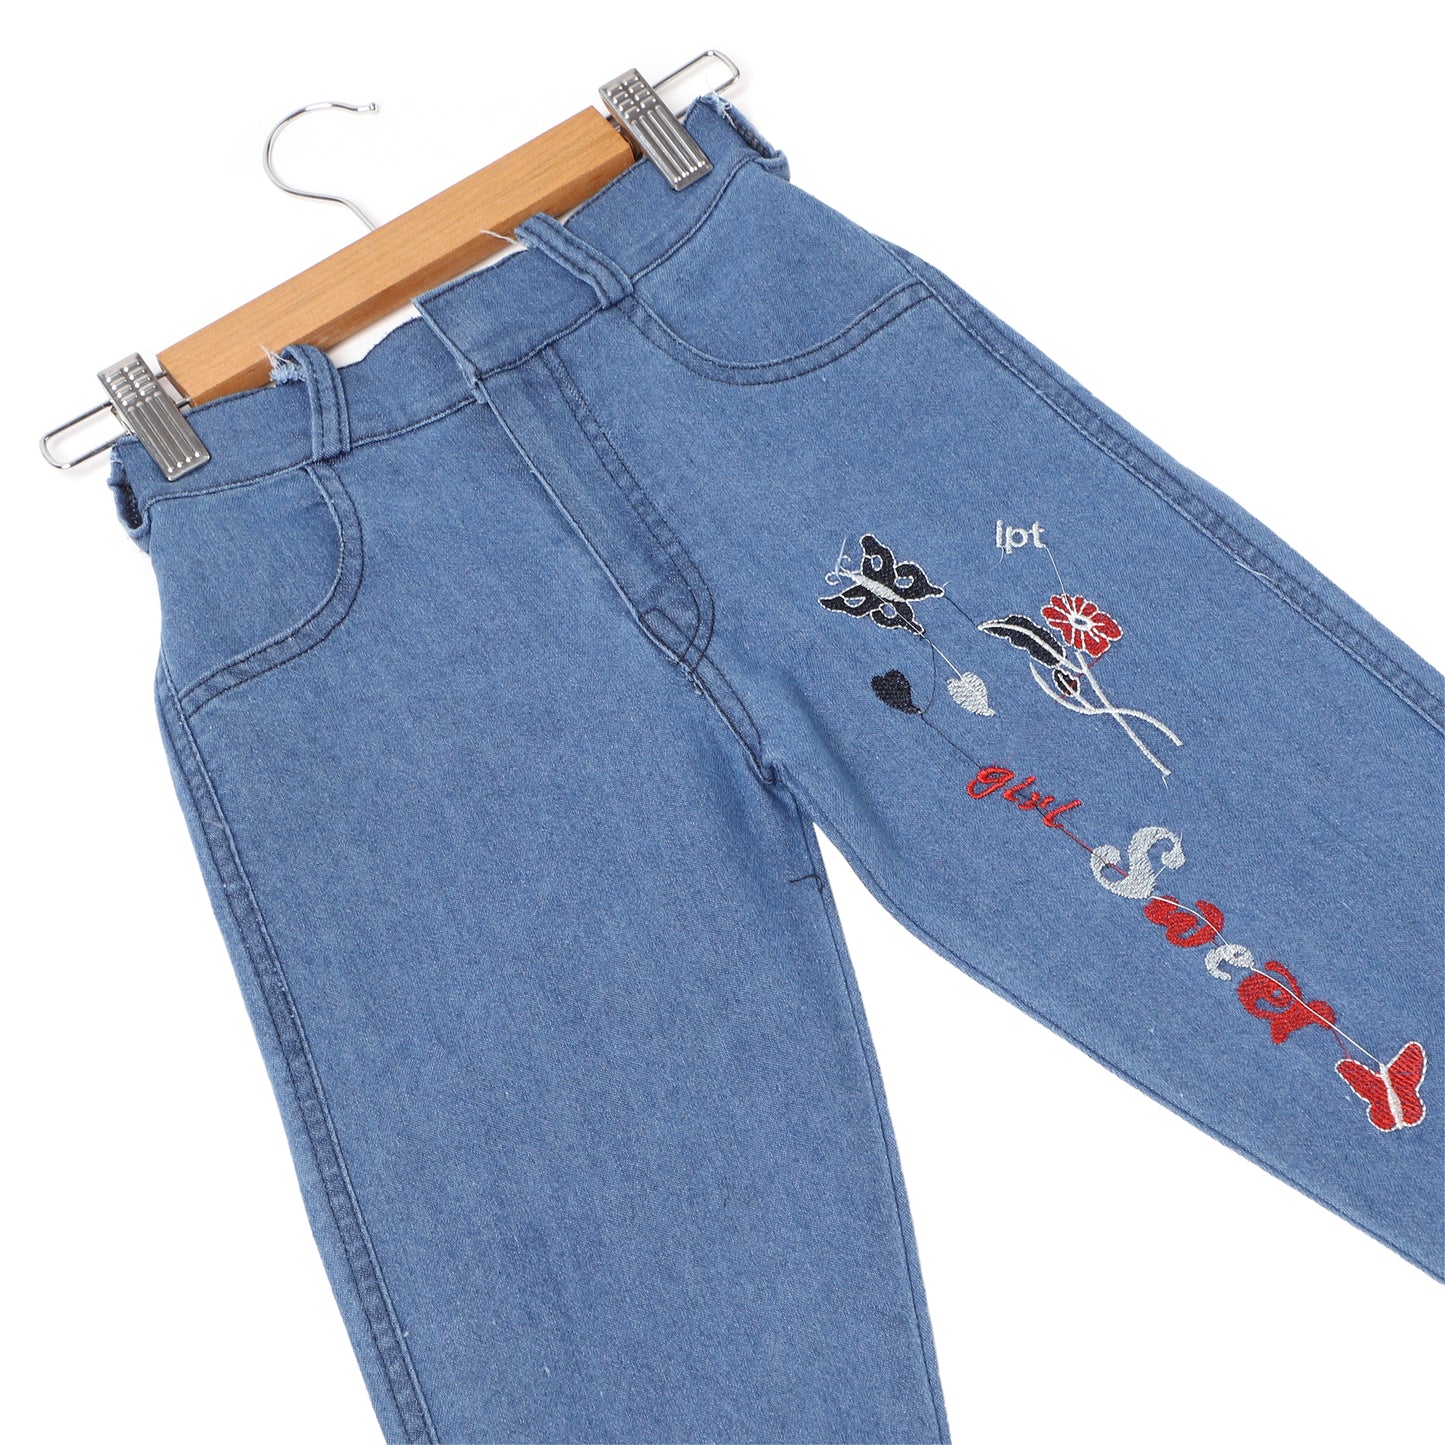 Denim Jeans for Girls - 12